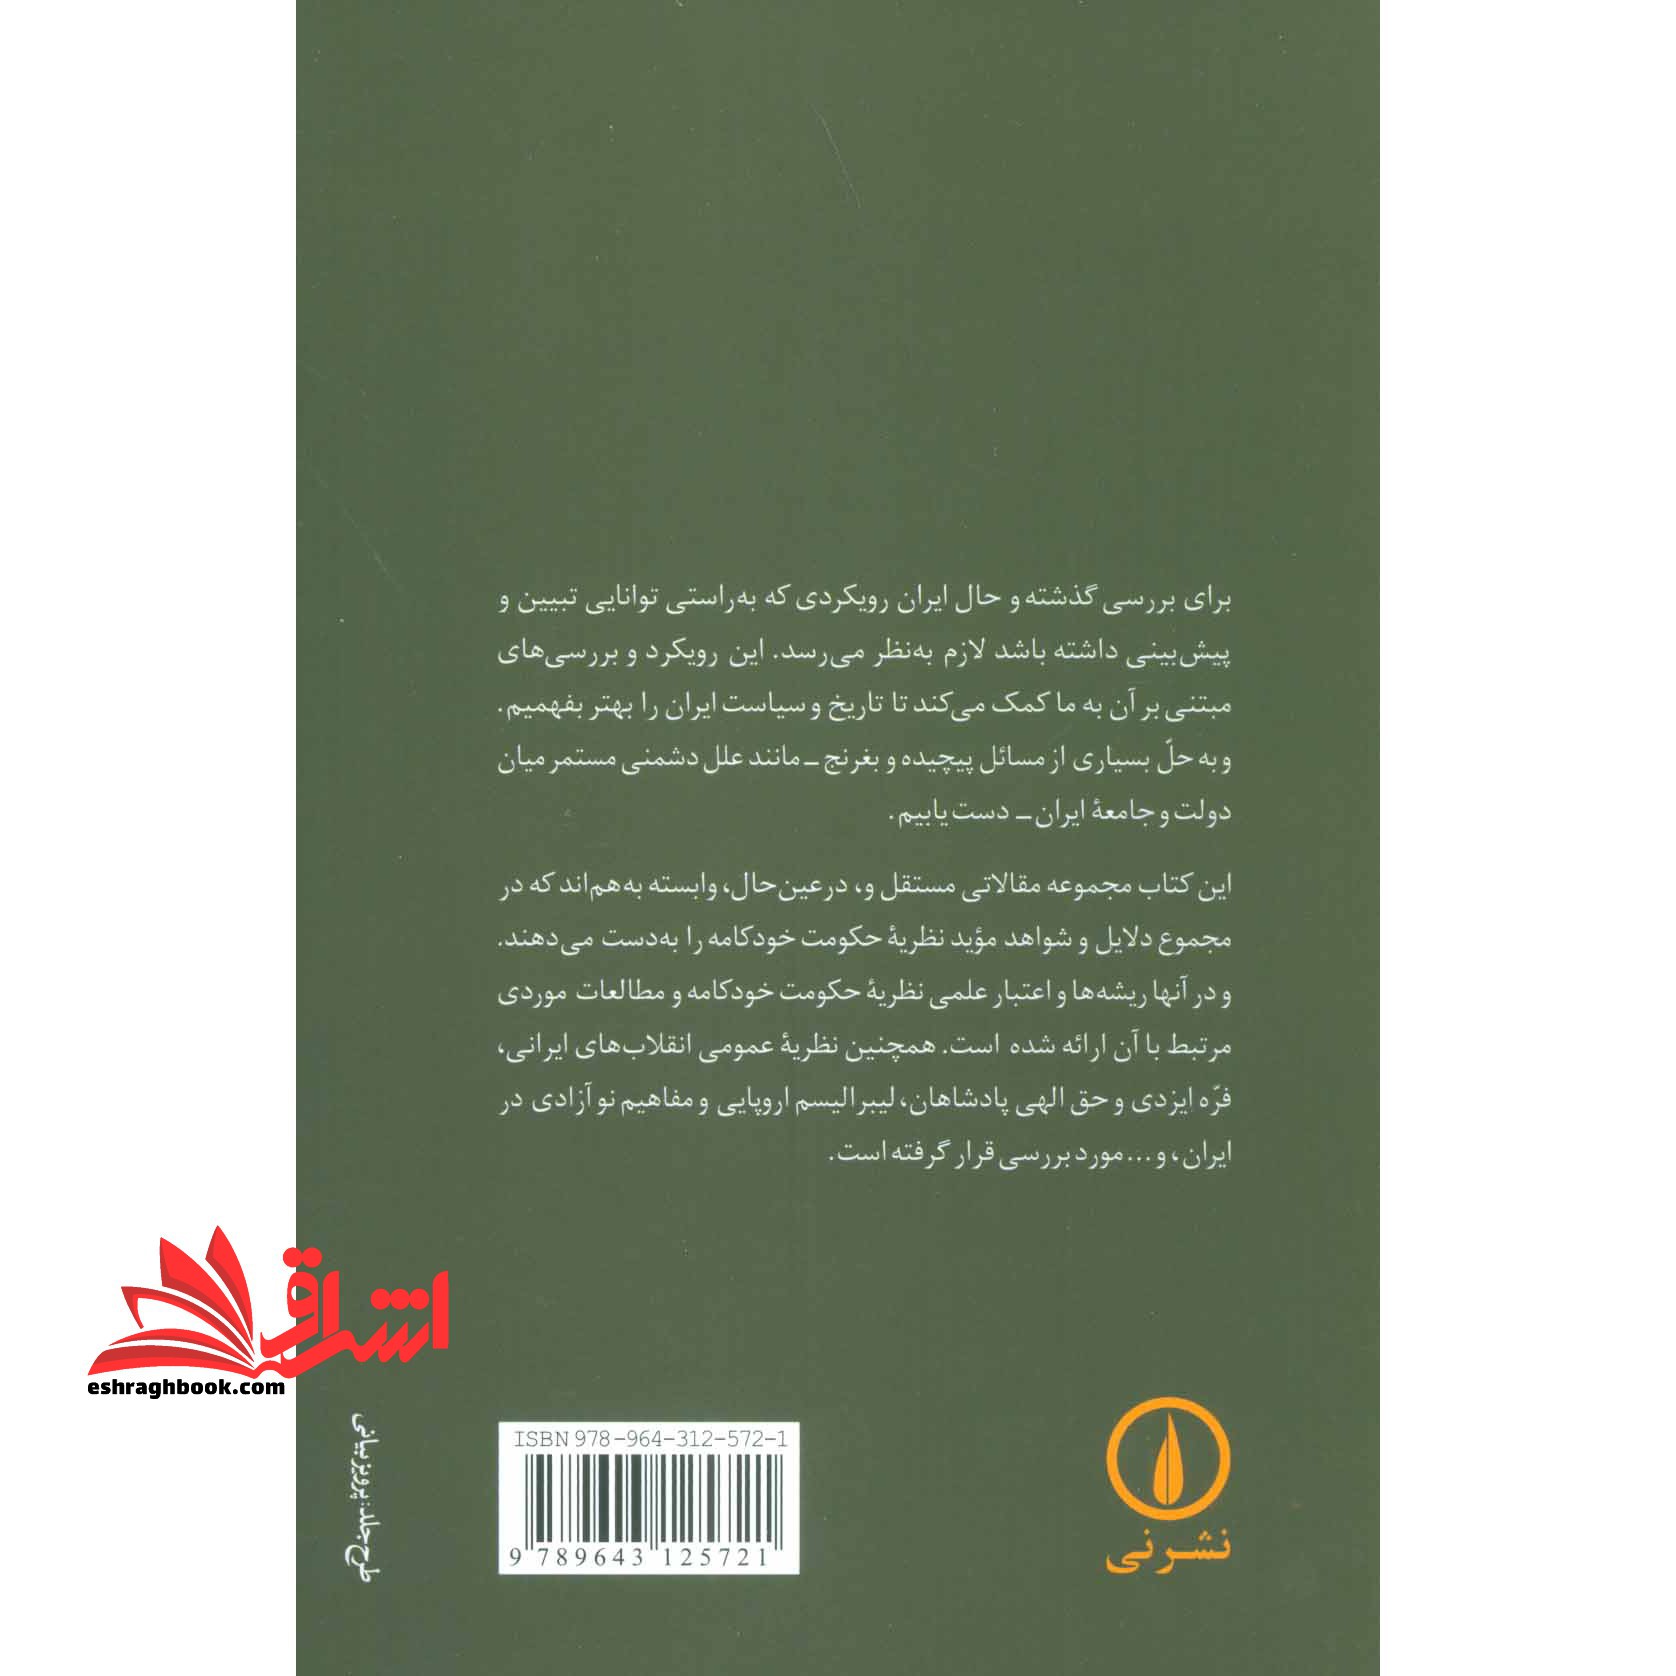 کتاب تضاد دولت و ملت - نظریه تاریخ و سیاست در ایران